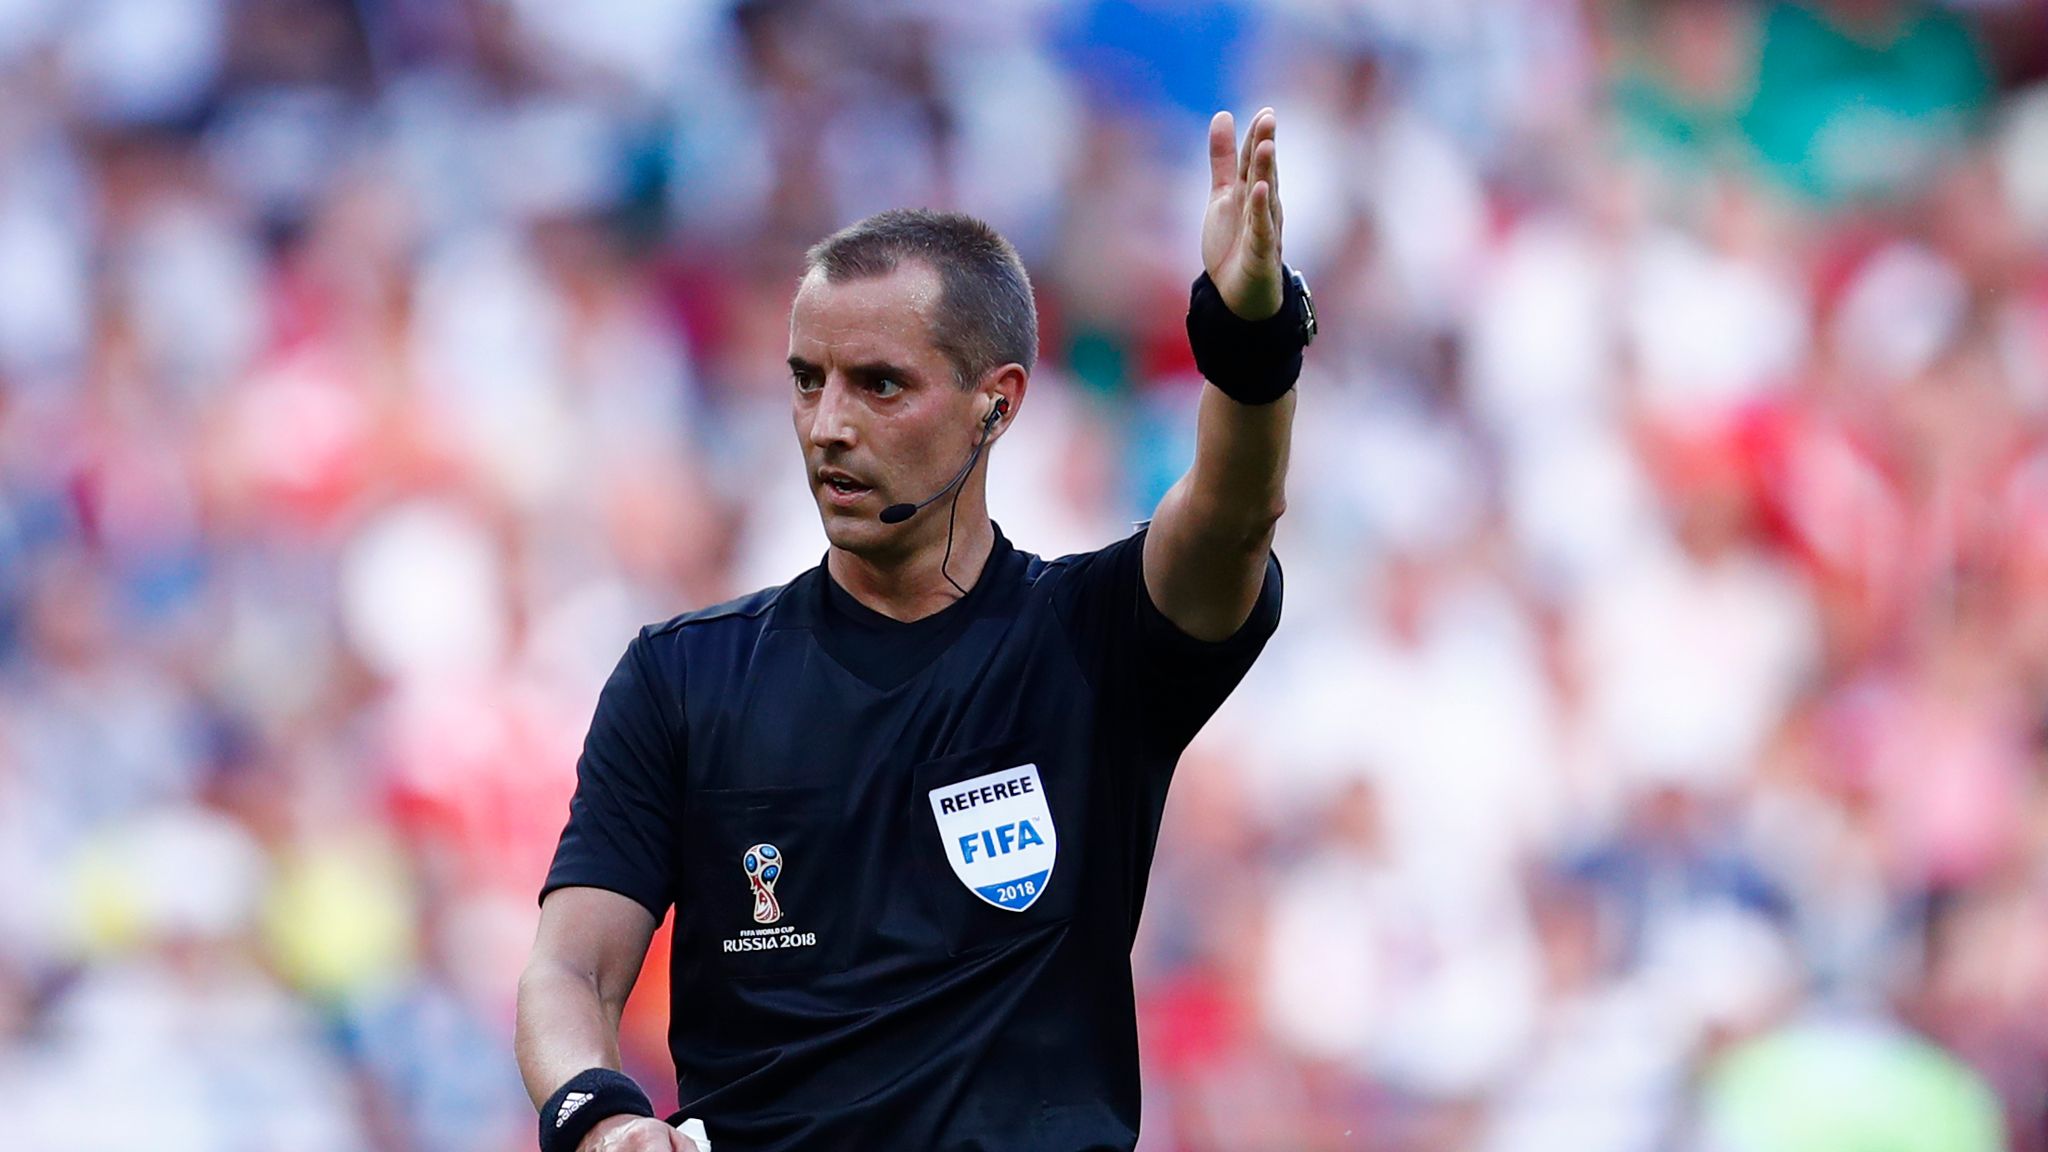 FIFA Referees News: May 2018